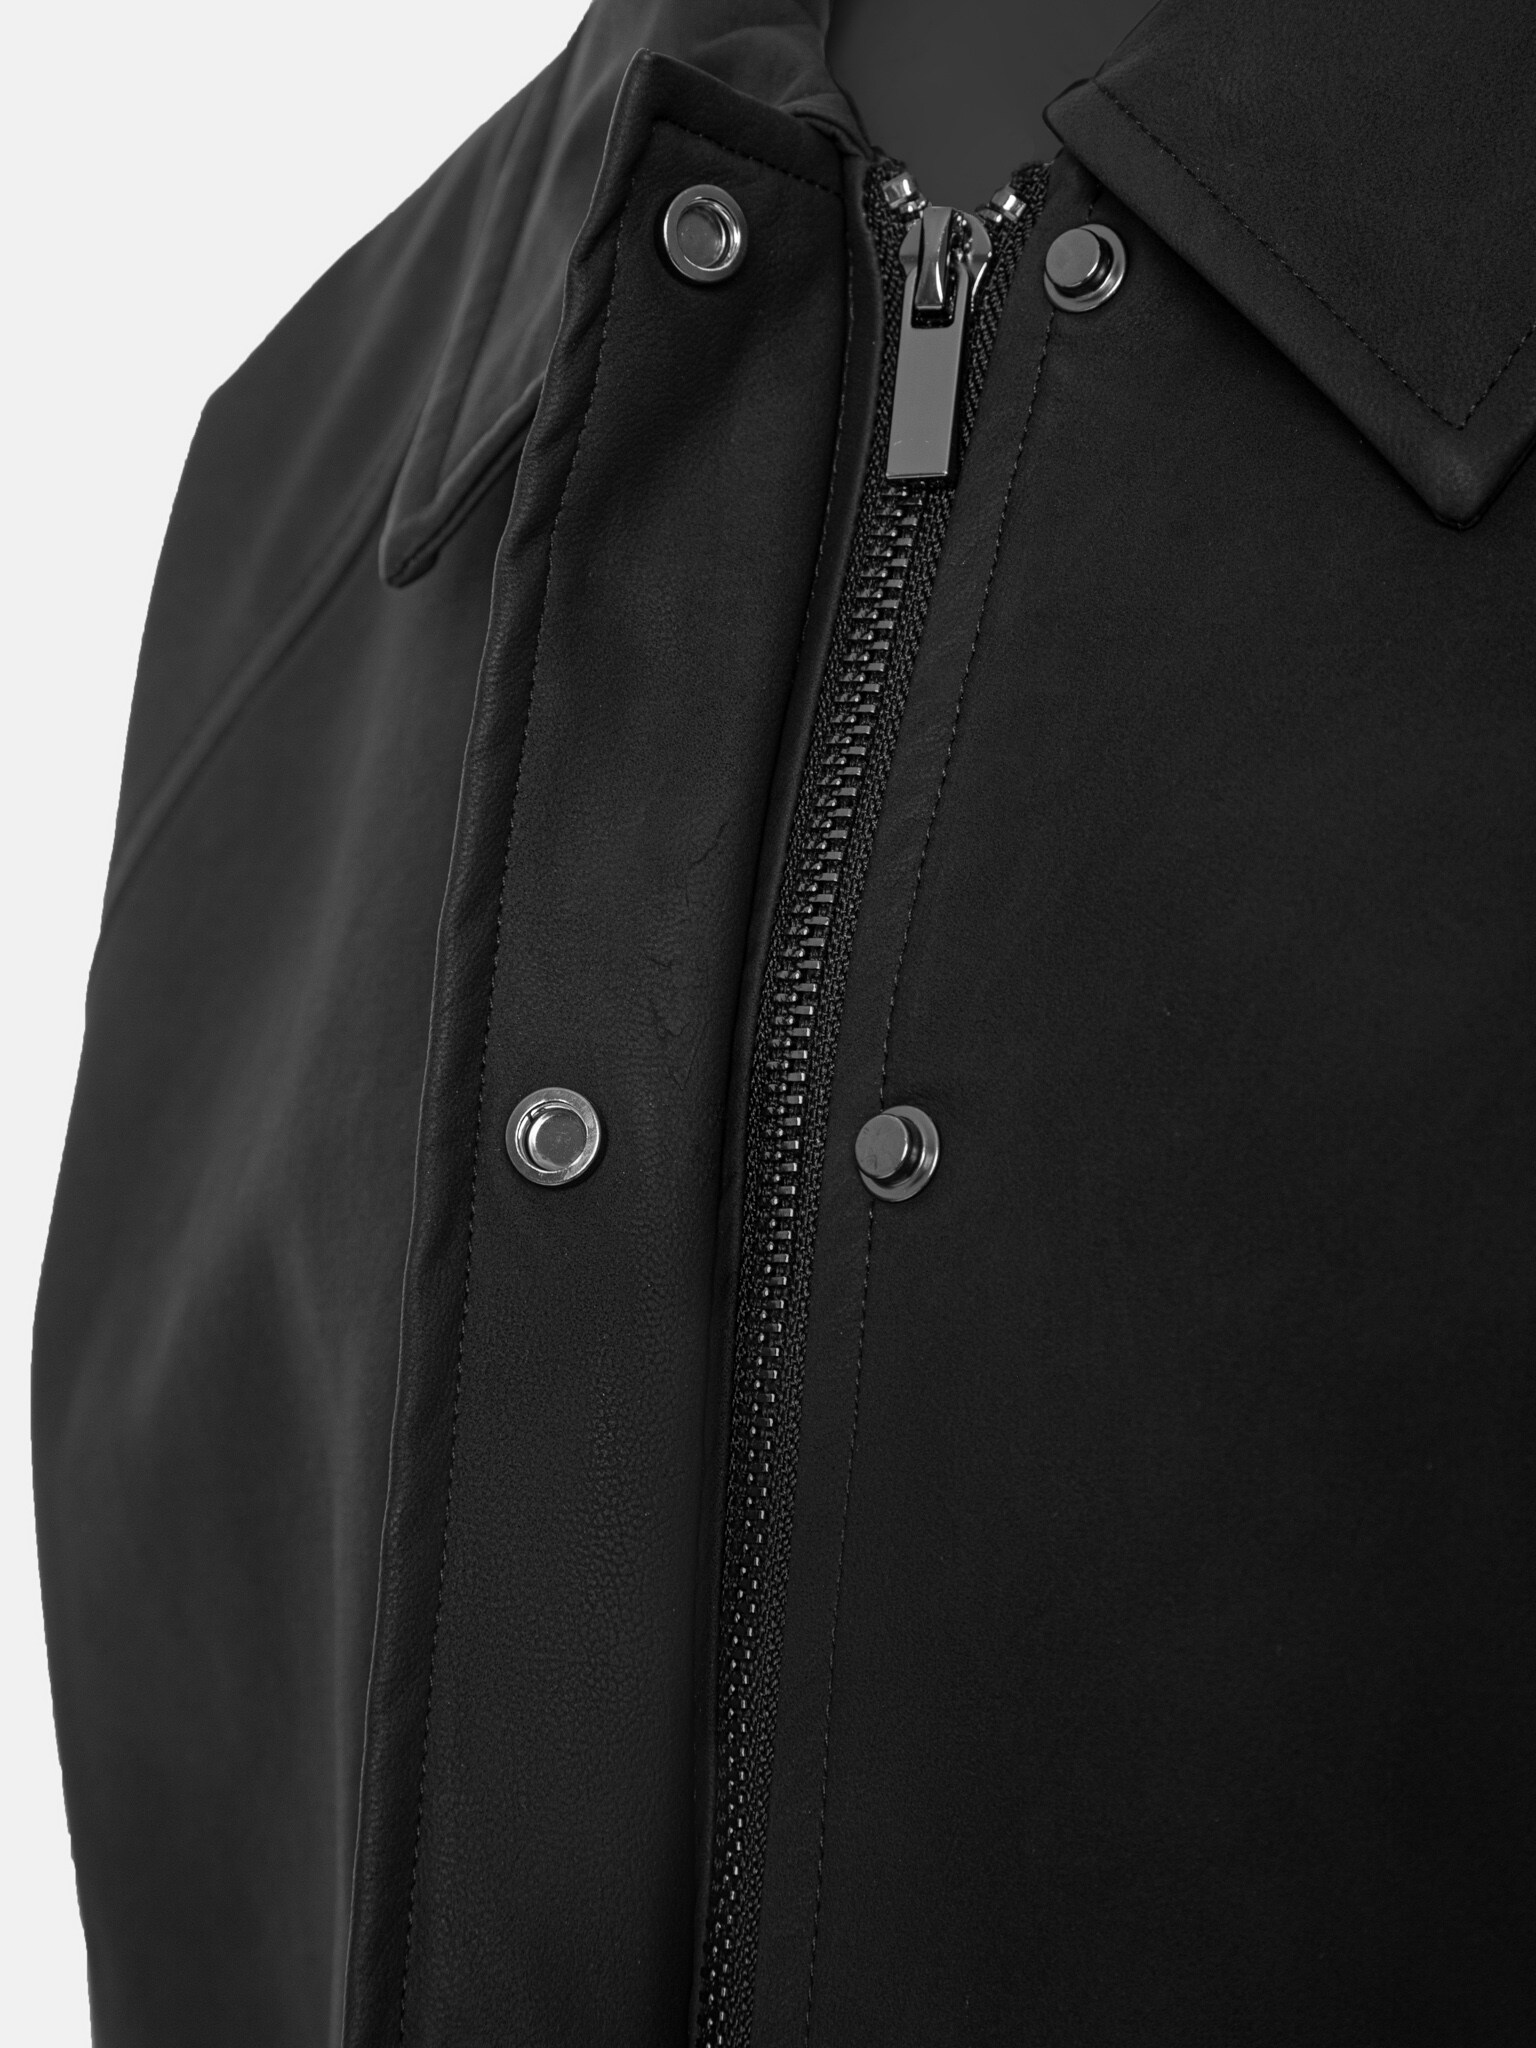 Oversized vegan-leather bomber jacket :: LICHI - Online fashion store